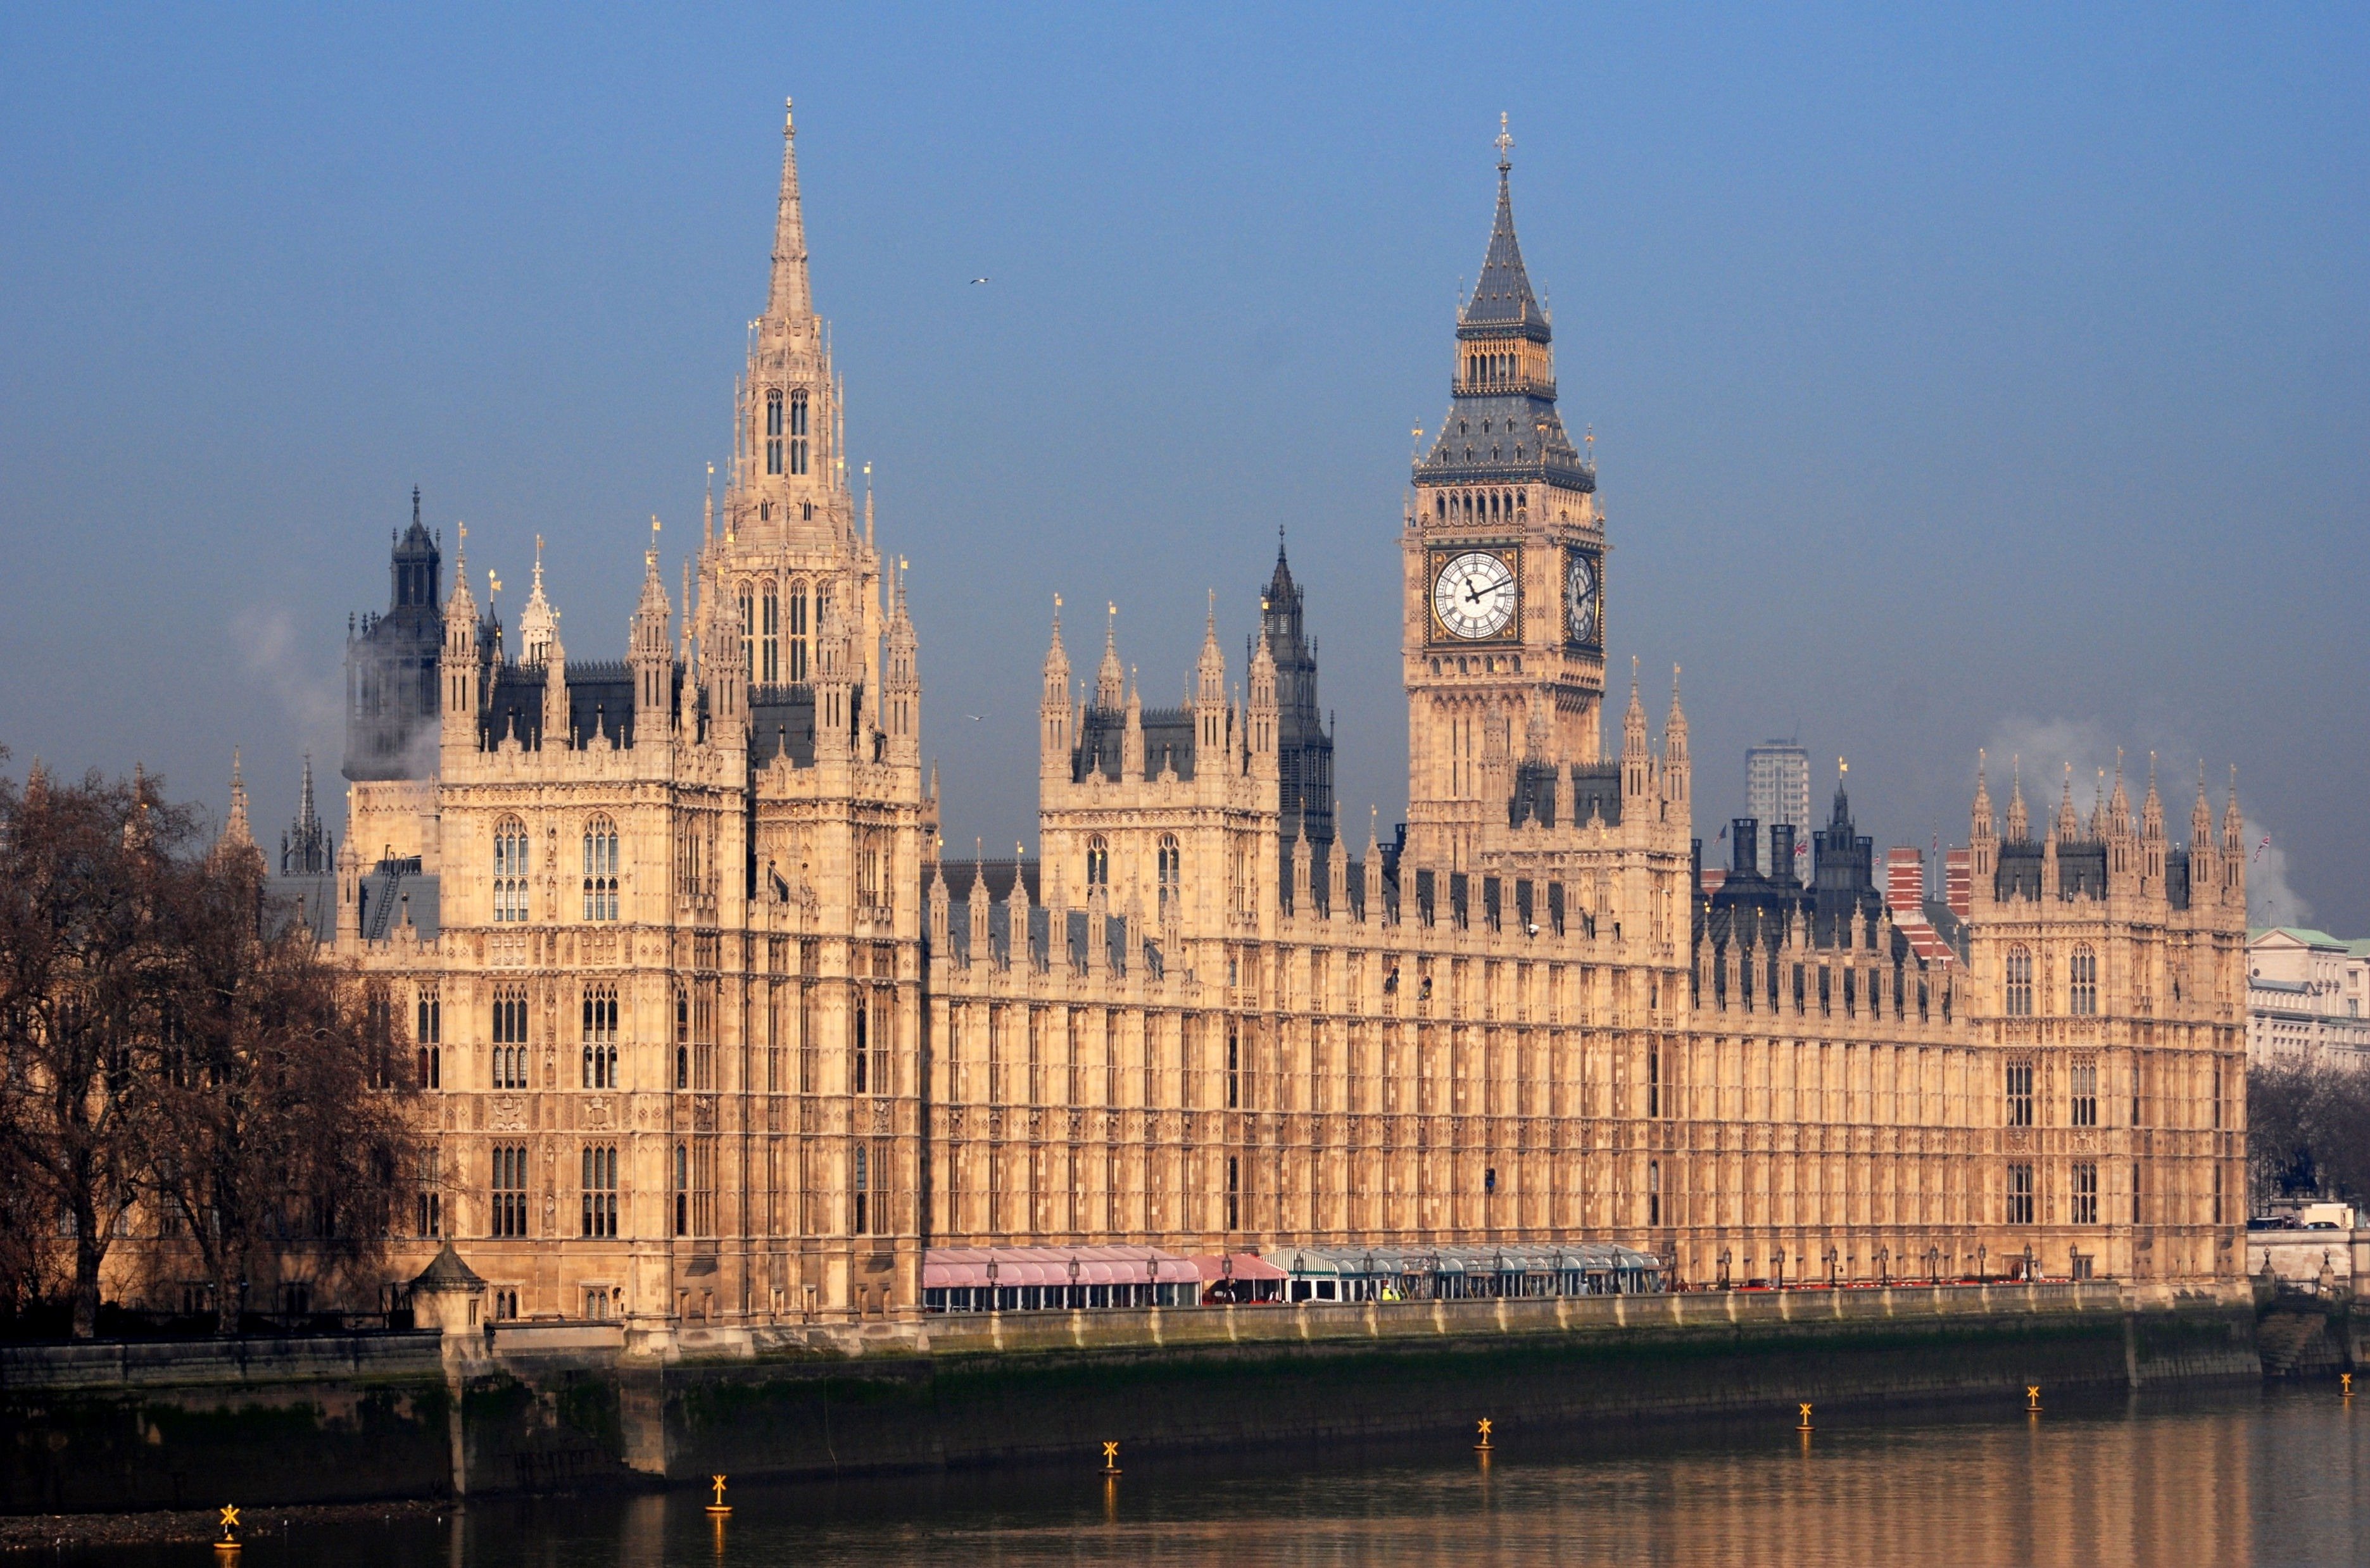 Вестминстер лондон. Вестминстерский дворец (Palace of Westminster).. Houses of Parliament в Лондоне. Великобритания Вестминстерский дворец Биг Бэн. Здание парламента - Вестминстерский дворец.